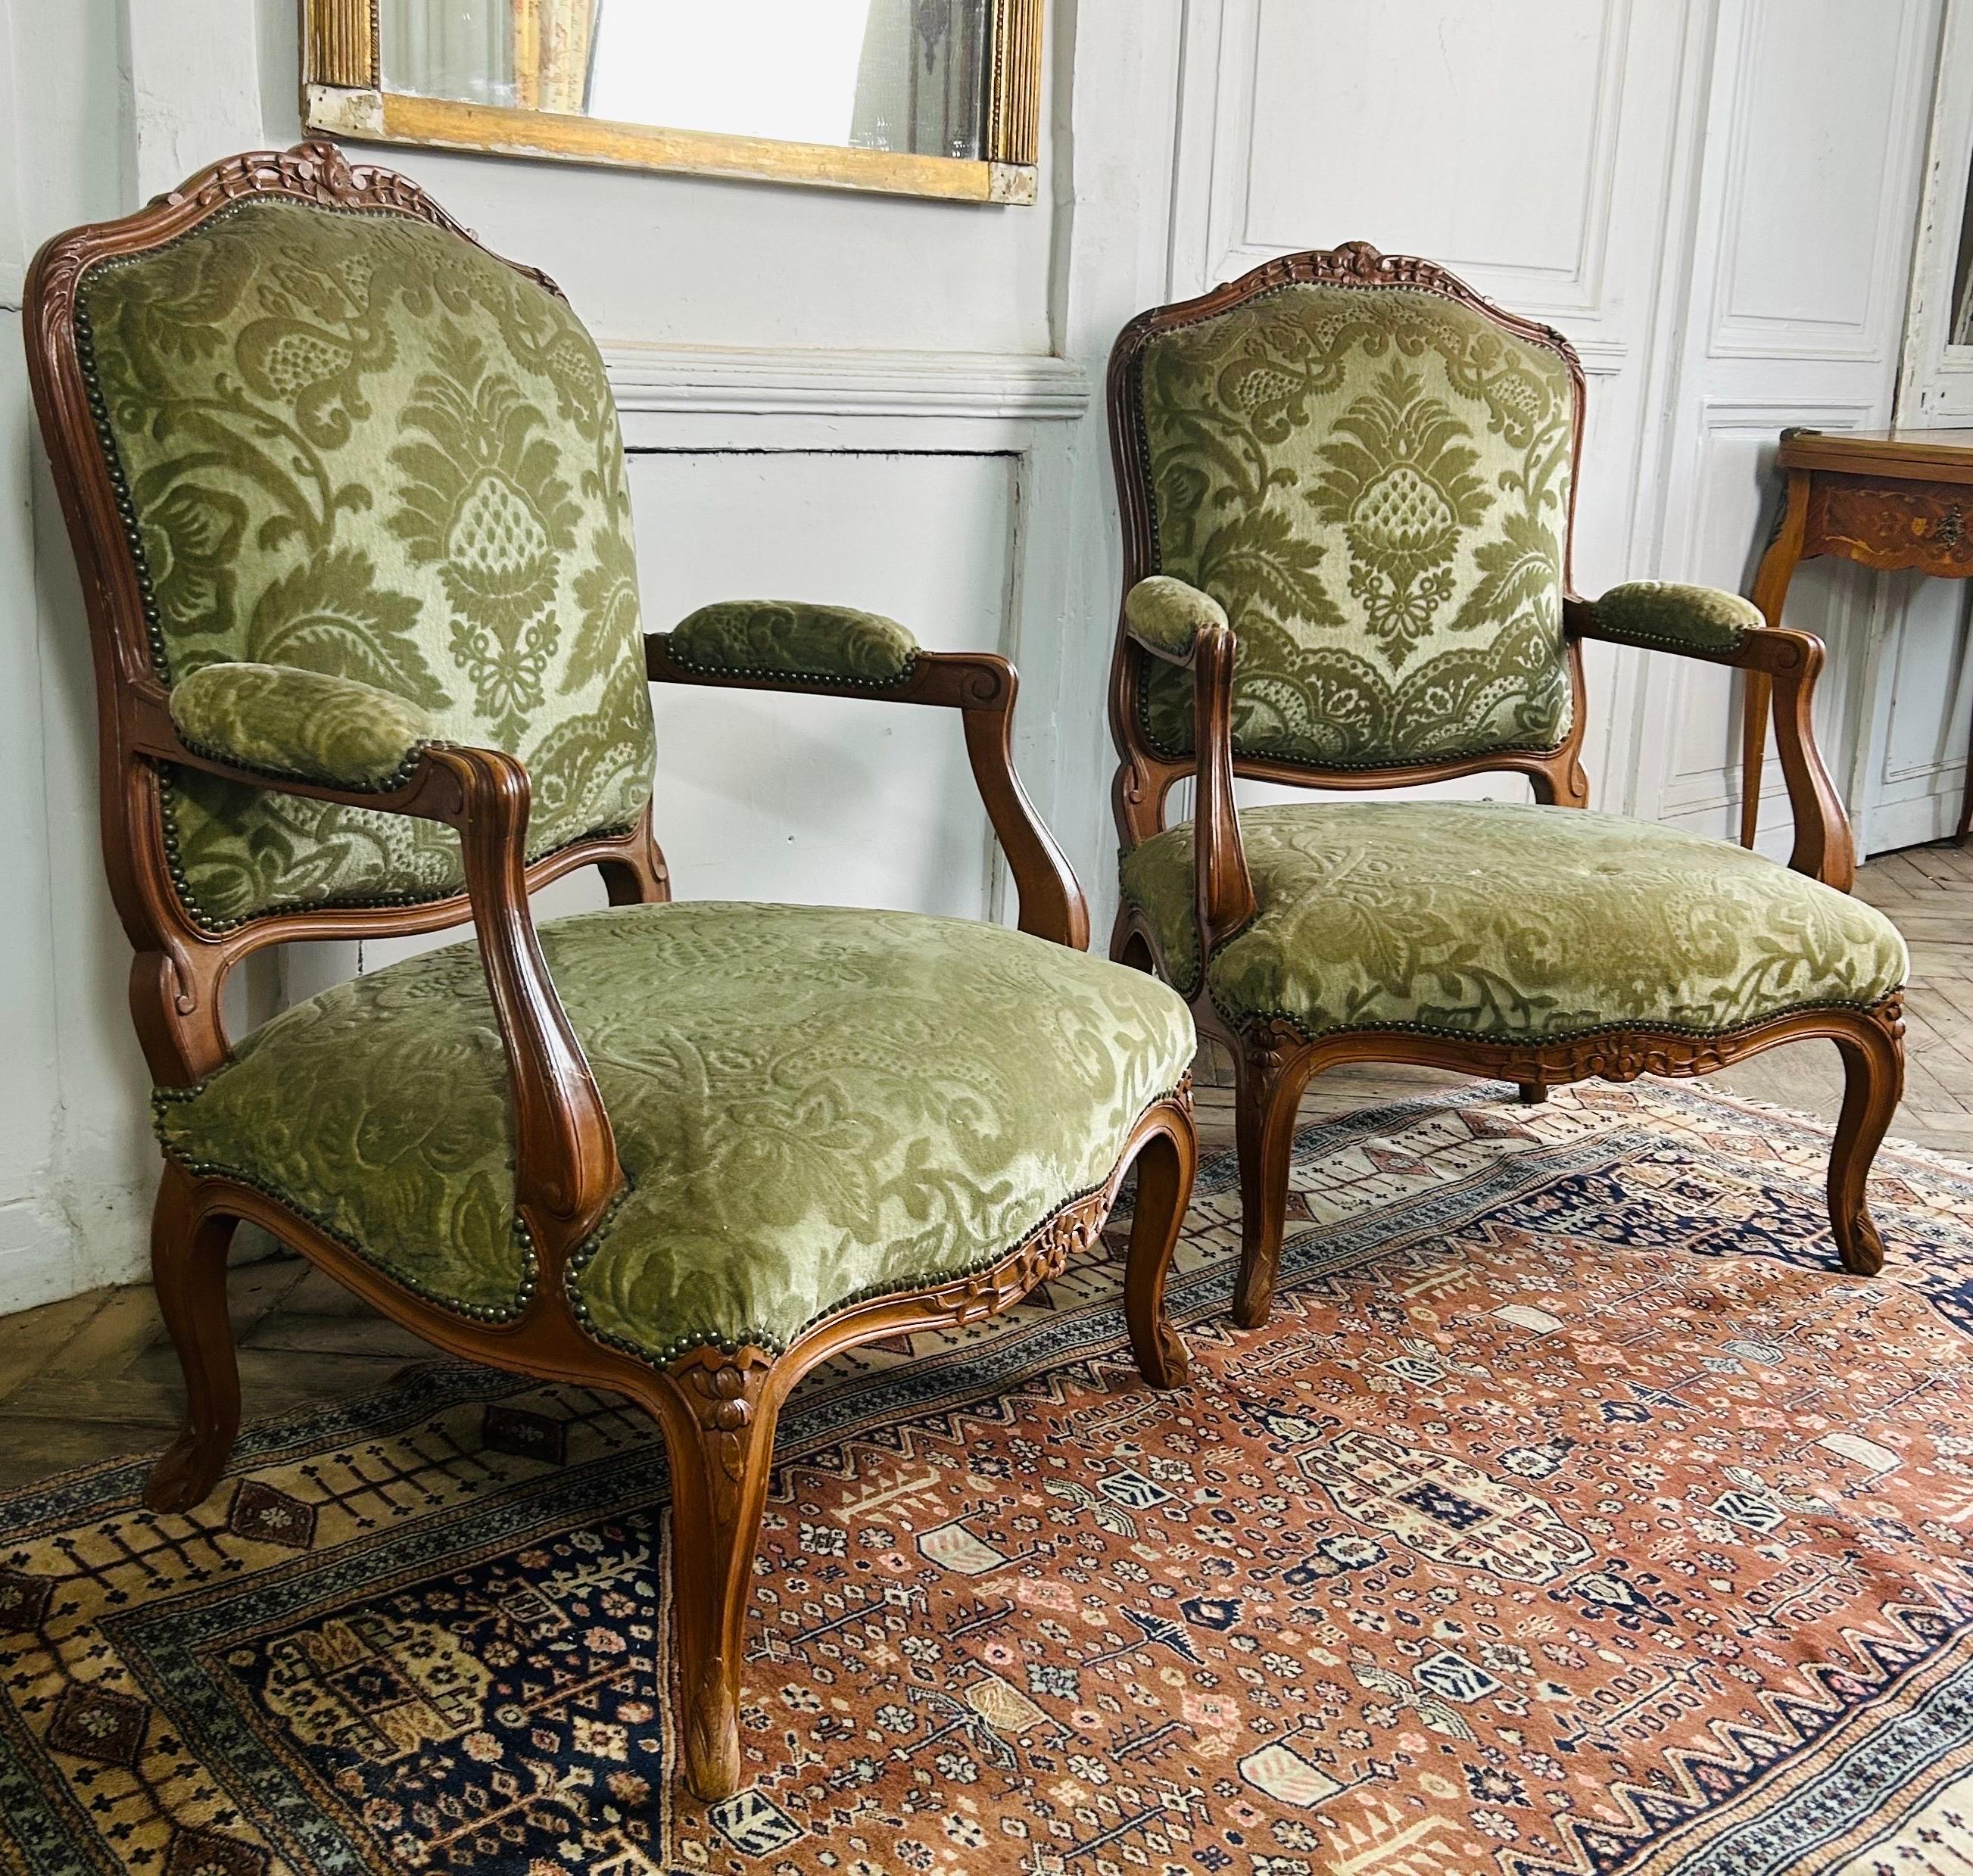 Charmante paire de fauteuils cabriolet de style Louis 15 en bois de hêtre, recouverts de tissu velours vert amande. Napoléon 3 Période.

2 Très beaux fauteuils à dossier plat dits 